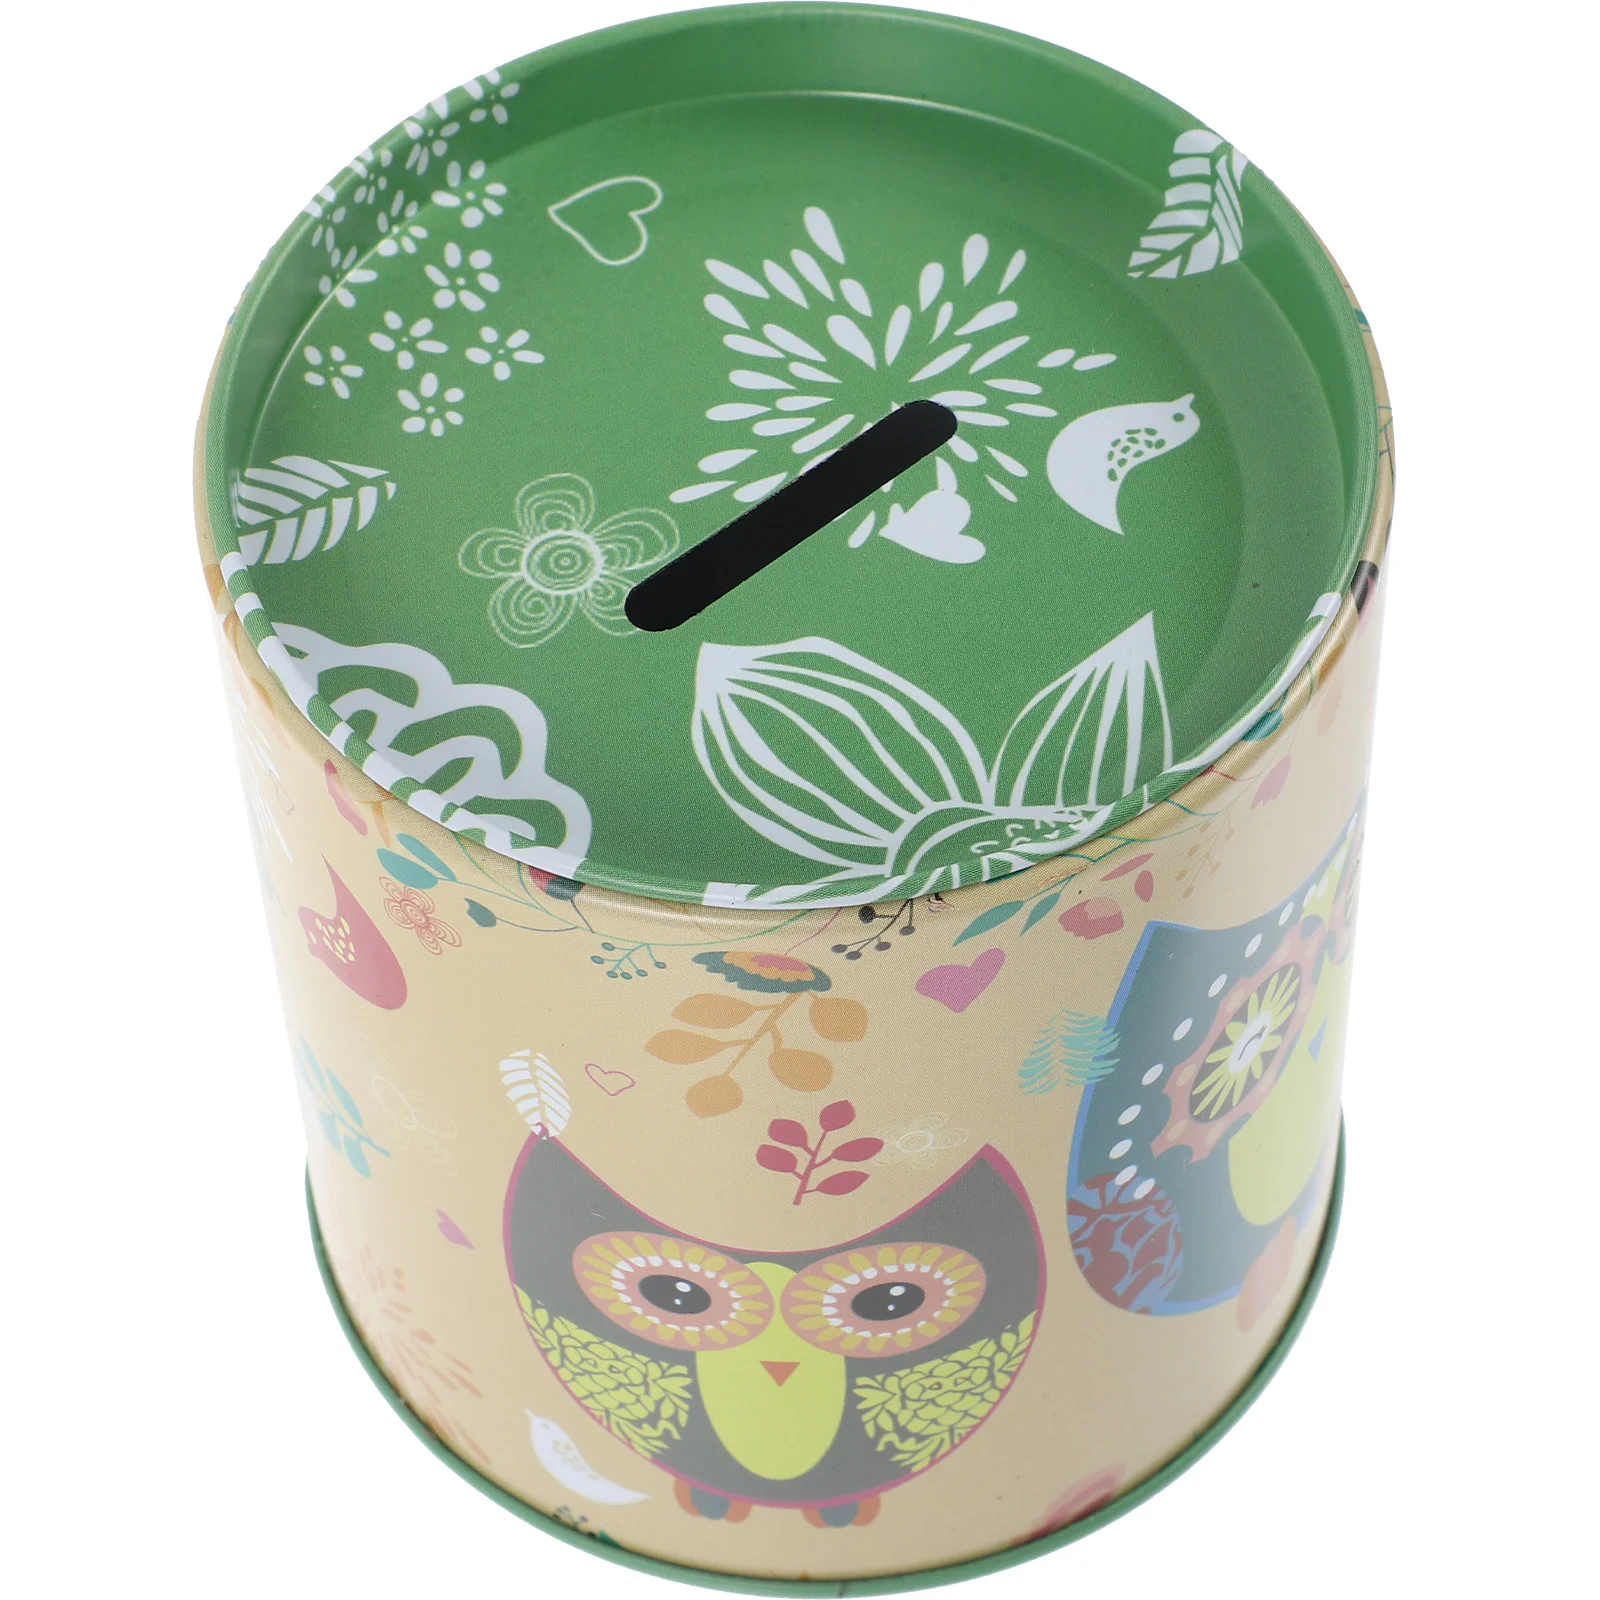 

Owl Piggy Bank Compact Saving Pot Kids Coin Jar Money Tinplate Decoration Container Student